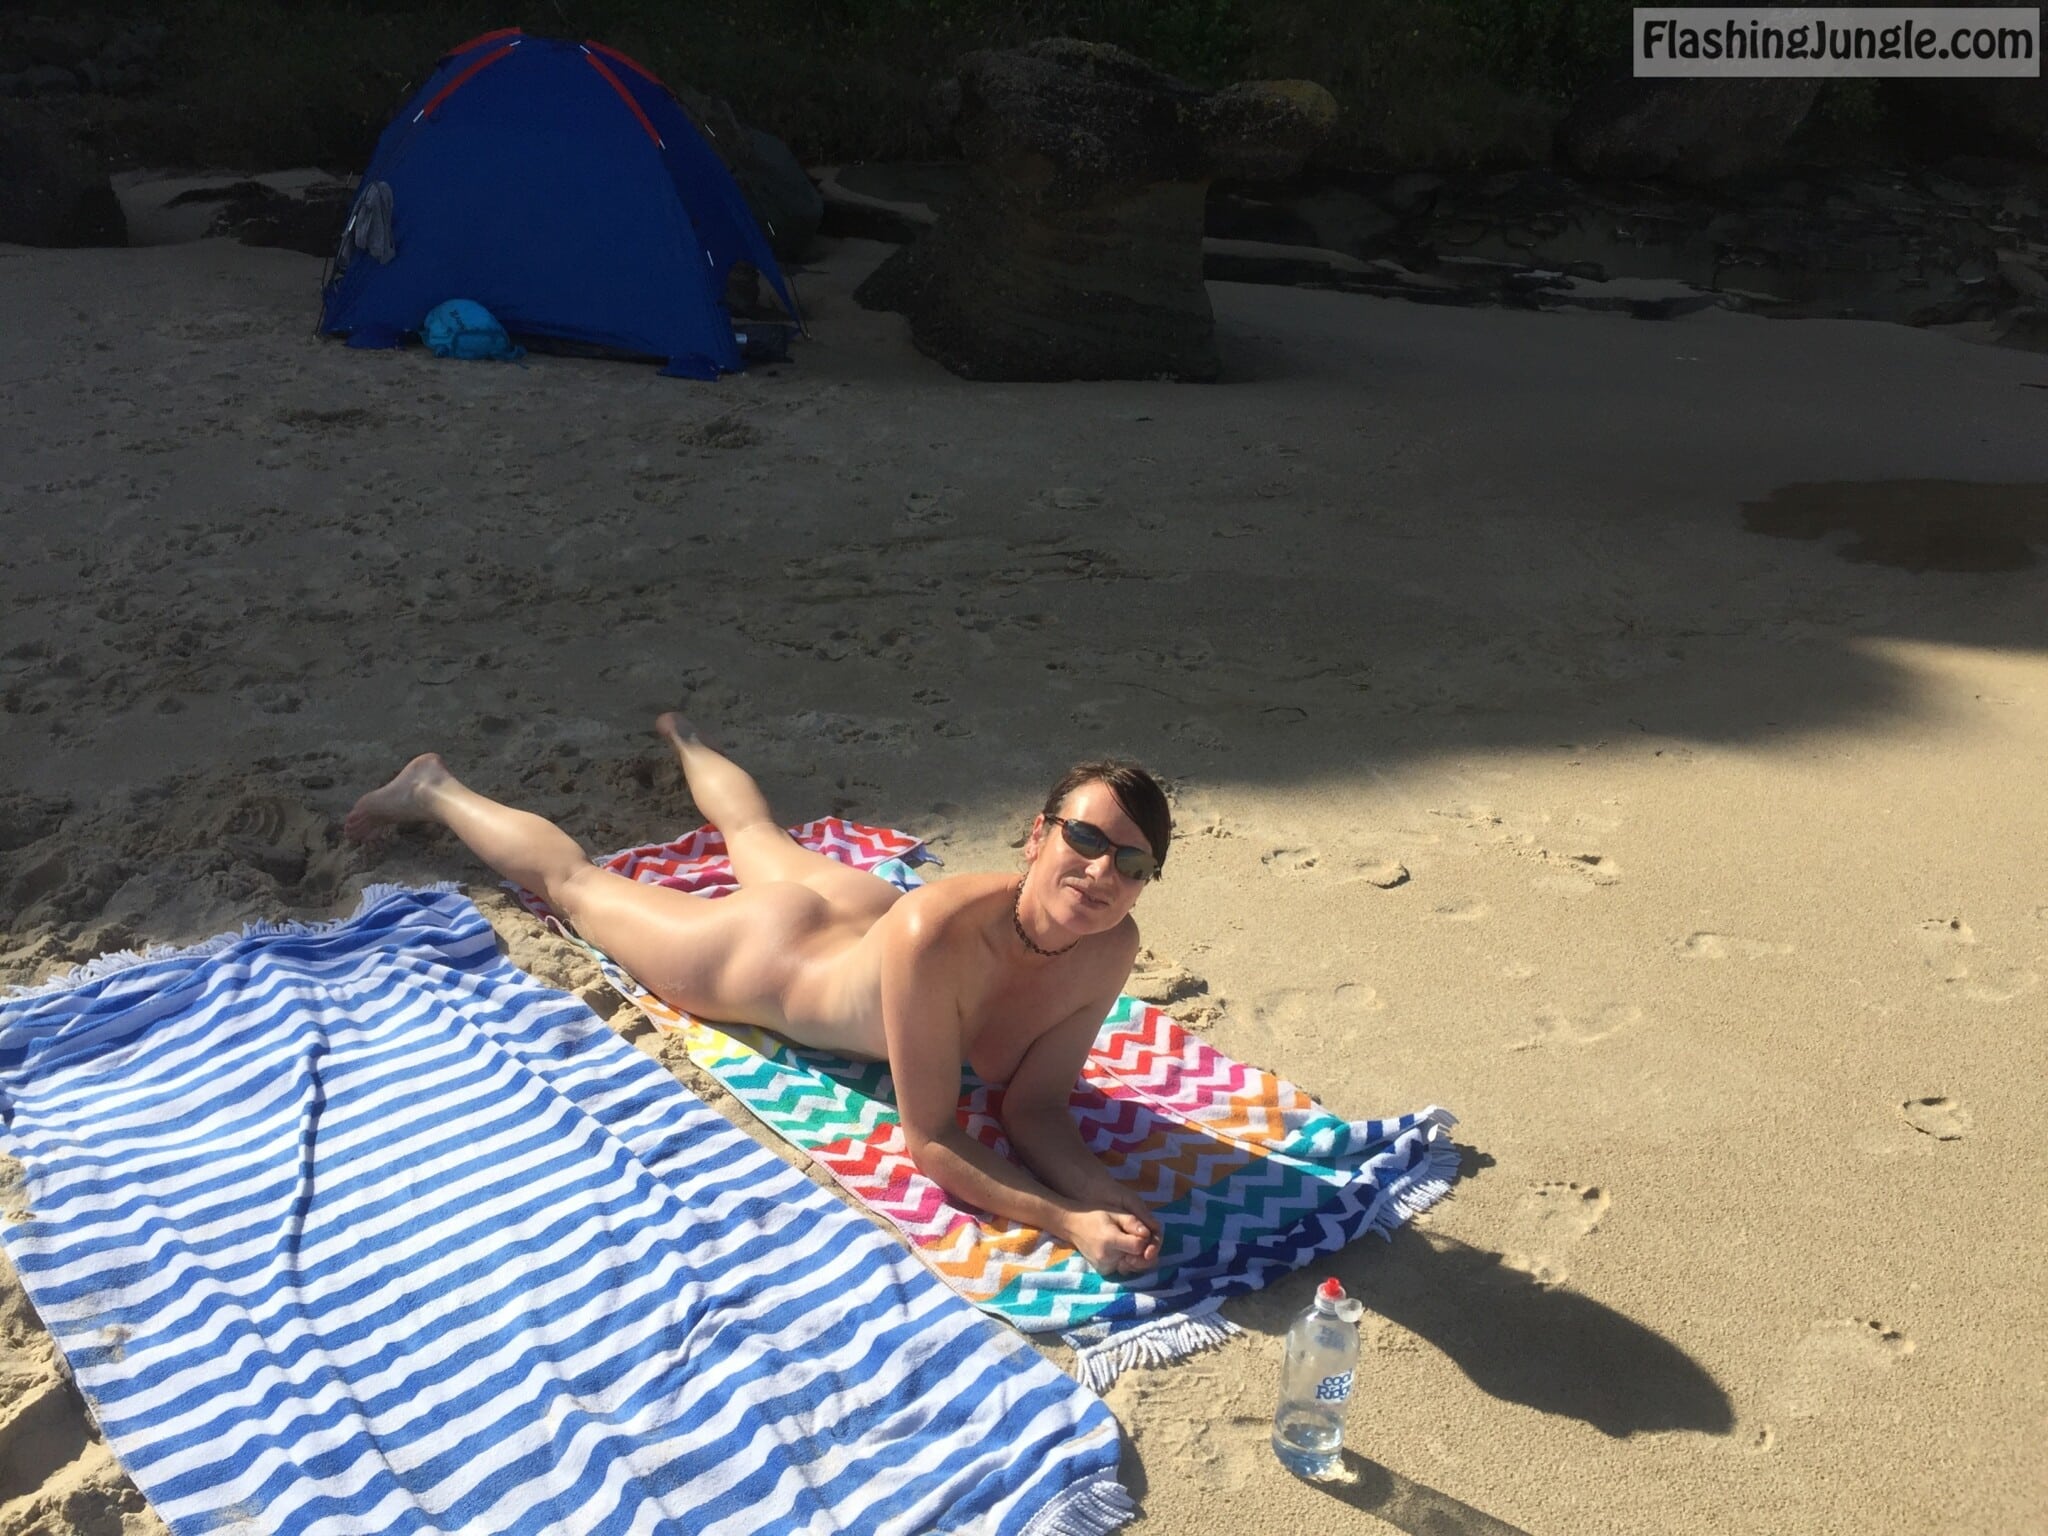 voyeur ass - milf showing hot ass and naked body for beach voyeurs - Hotwife Pics